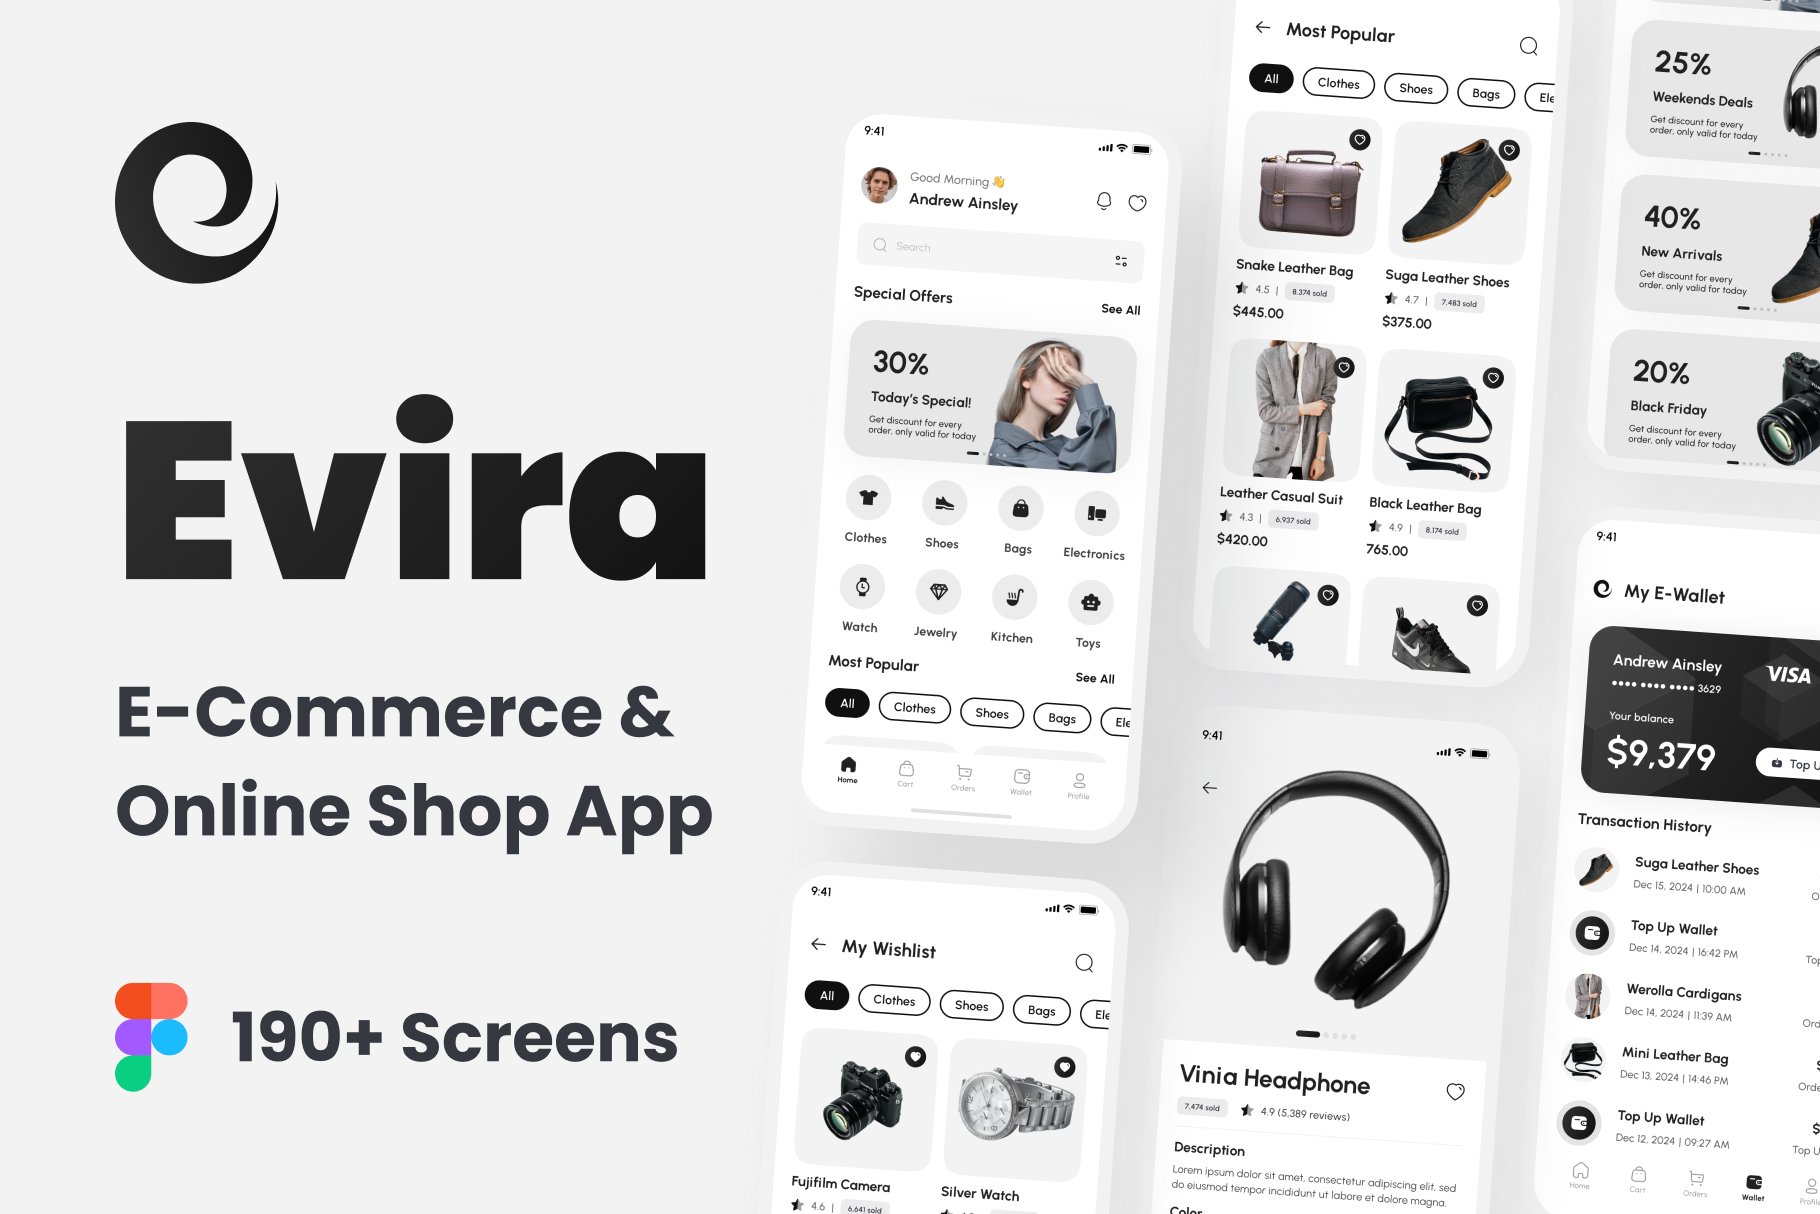 E-Commerce & Online Shop App UI Kit cover image.